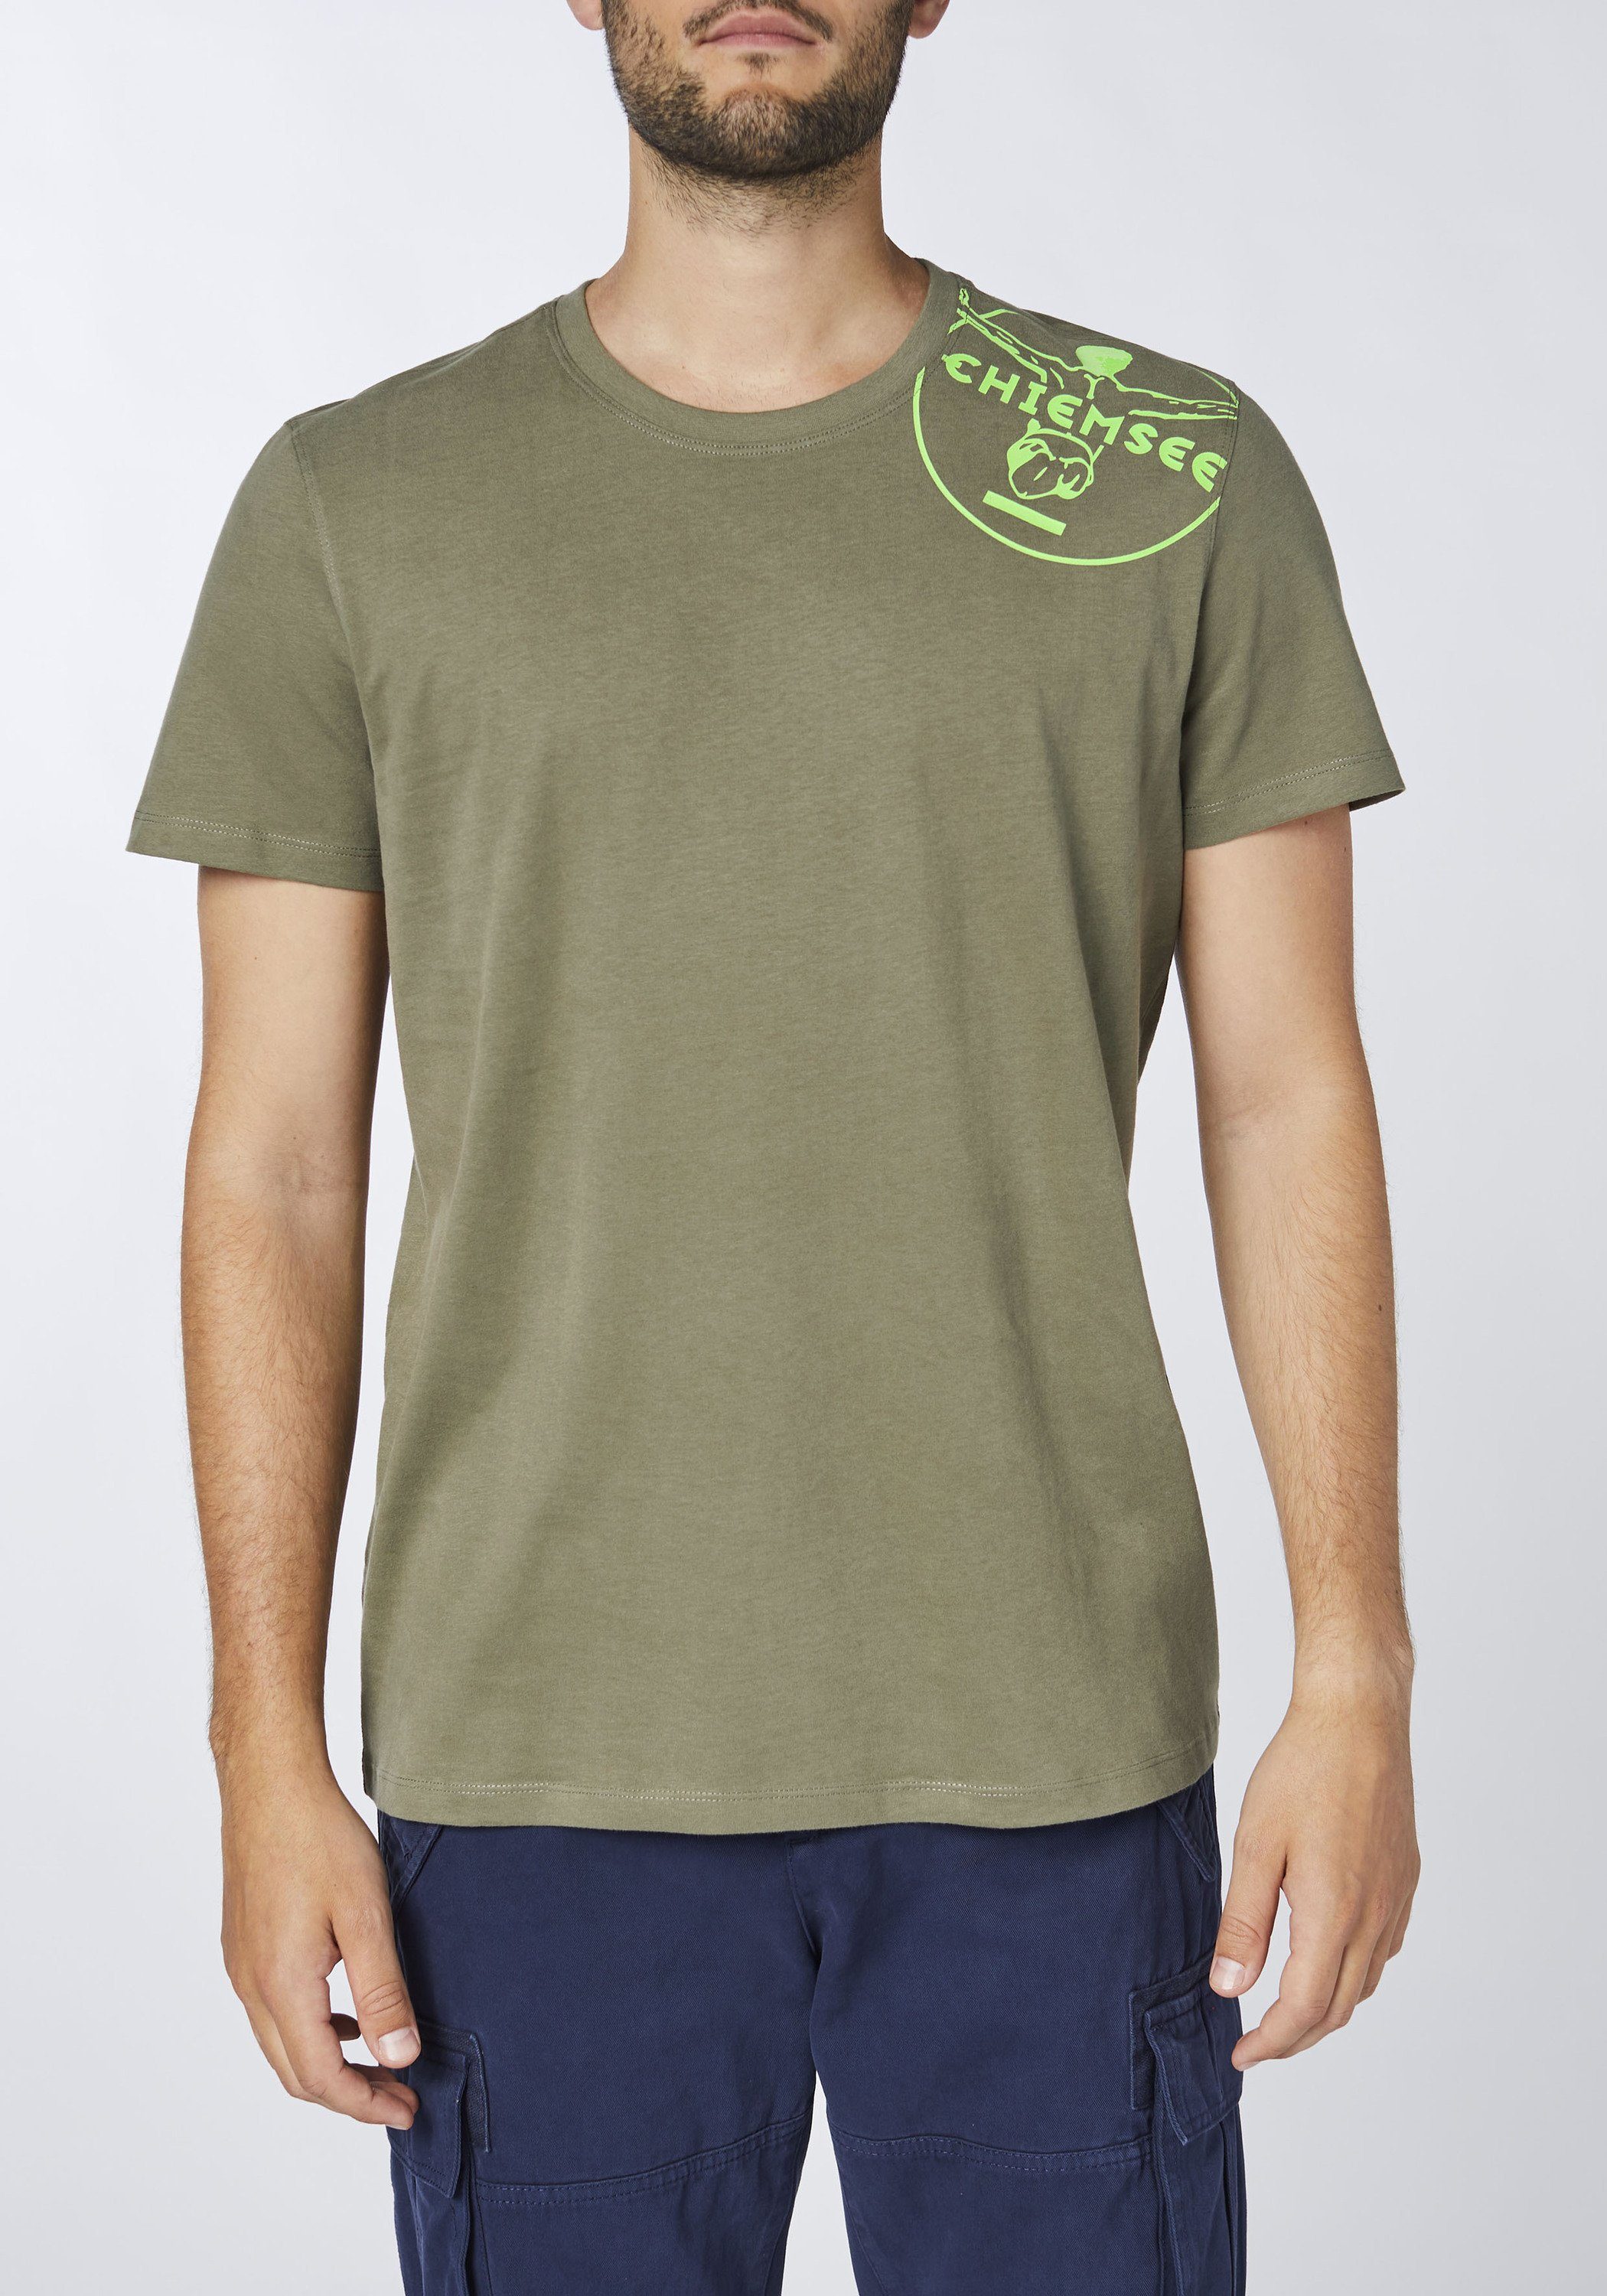 T-Shirt Olive Dusty 1 Print-Shirt mit Chiemsee Jumper-Motiv